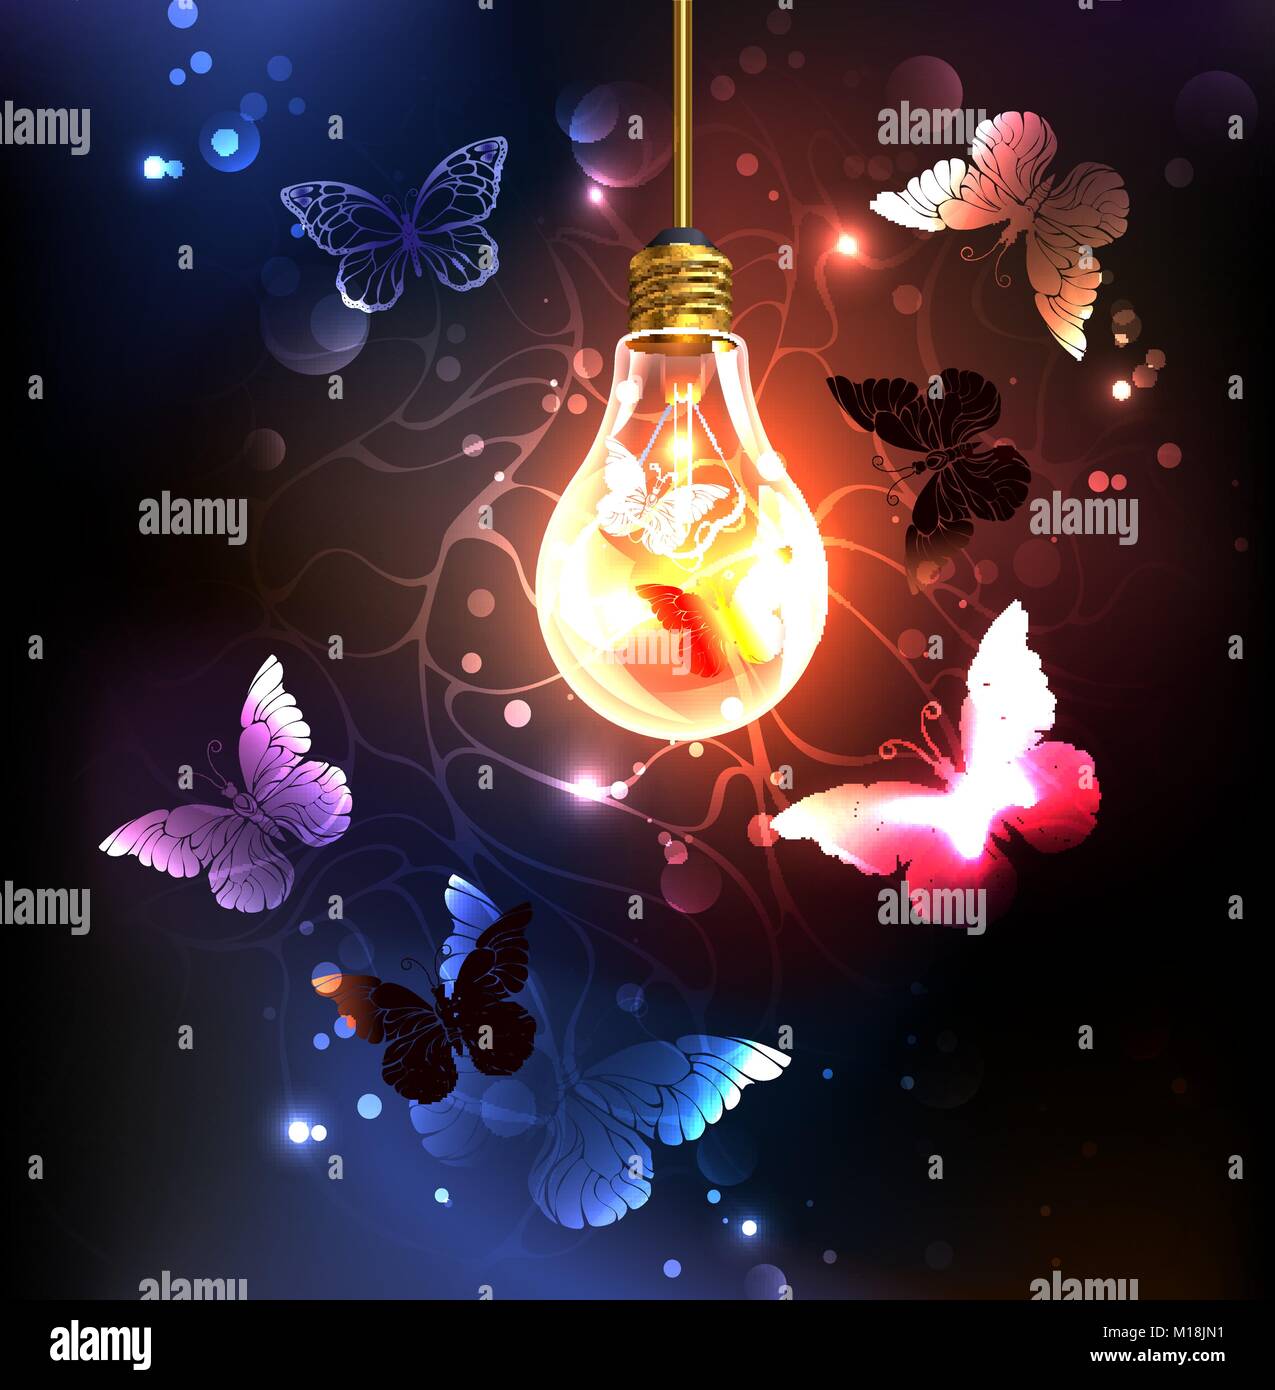 Il vetro della lampadina con farfalle di notte al buio su un sfondo luminoso. La notte delle farfalle. Design con farfalle. Illustrazione Vettoriale